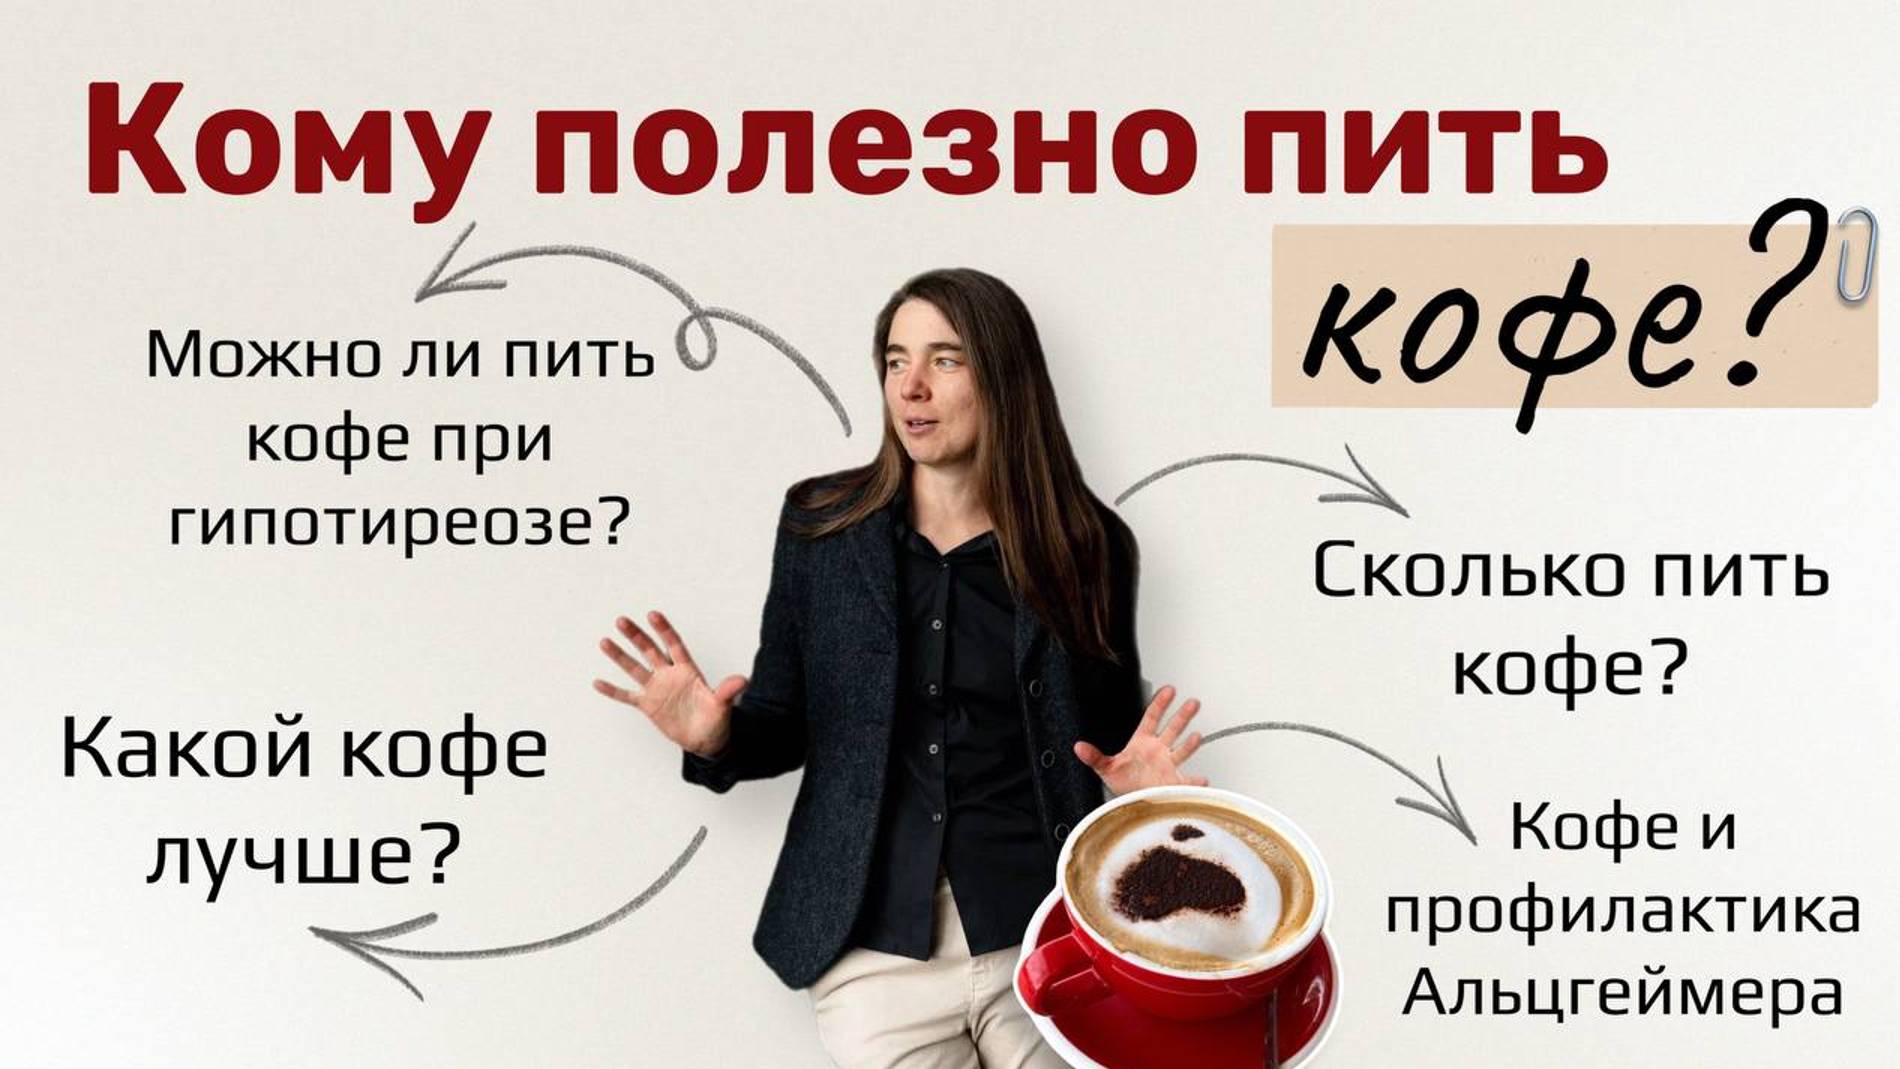 Кому полезно пить кофе?